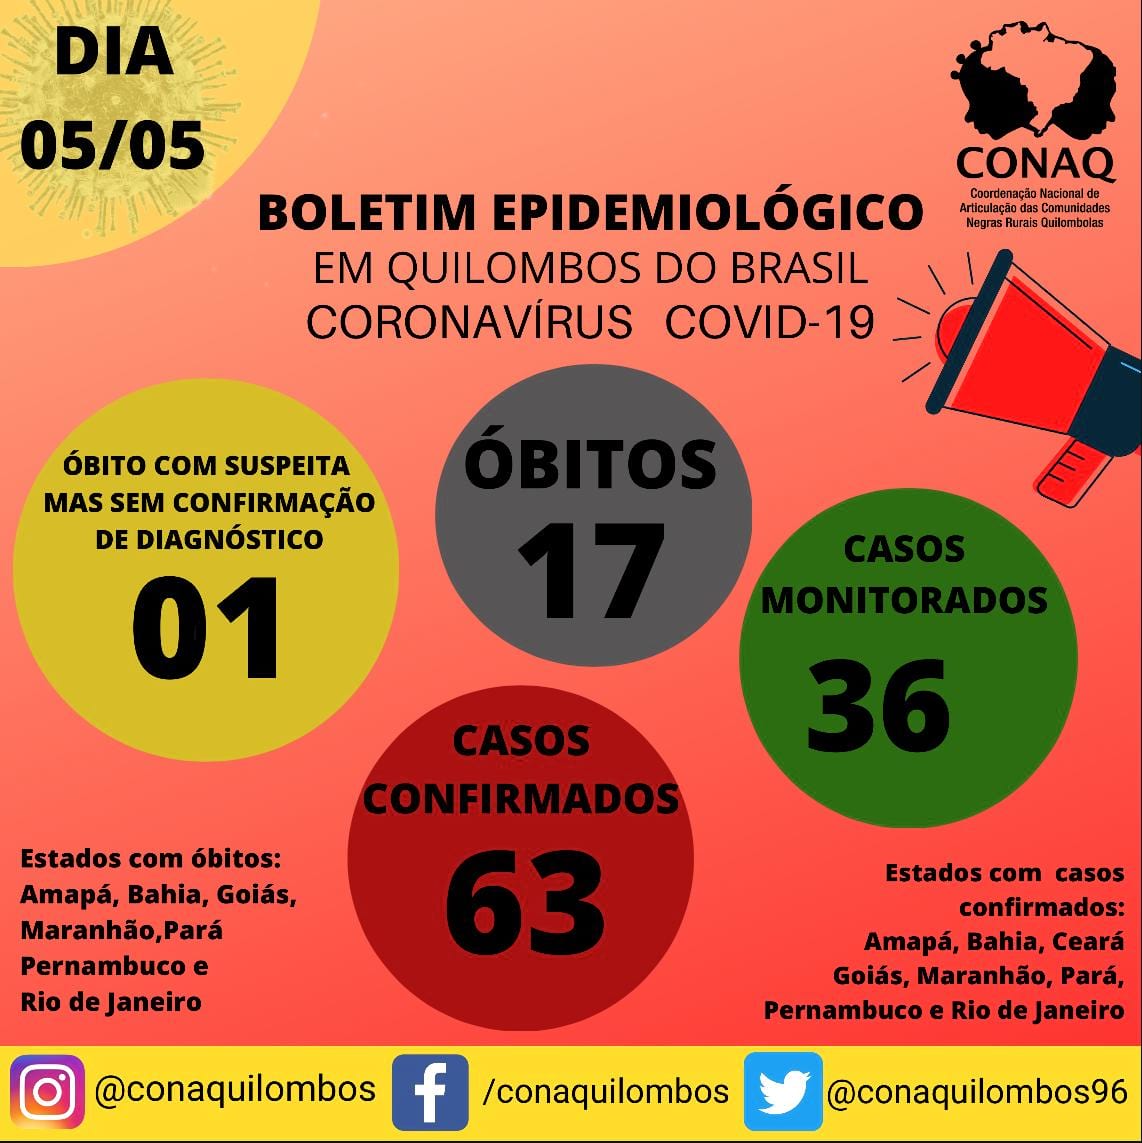 COVID-19: No período de 25 dias Amapá representa 41% dos óbitos mapeados entre a população quilombola